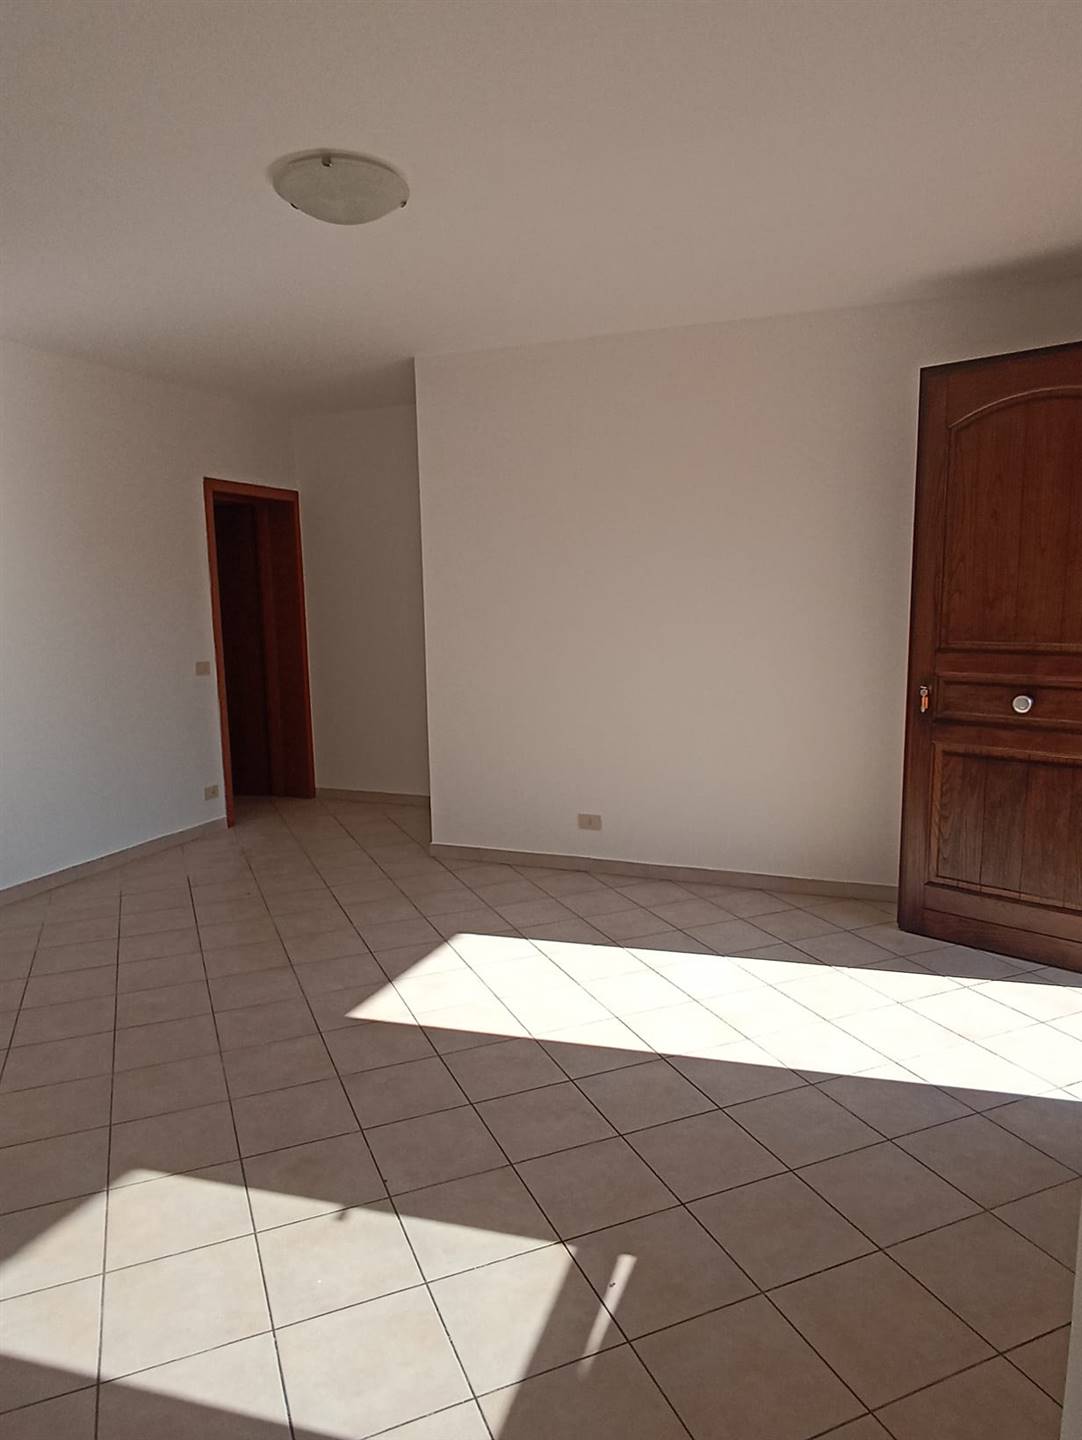 Appartamento in vendita a Quarrata, 4 locali, zona Zona: Casini, prezzo € 160.000 | CambioCasa.it